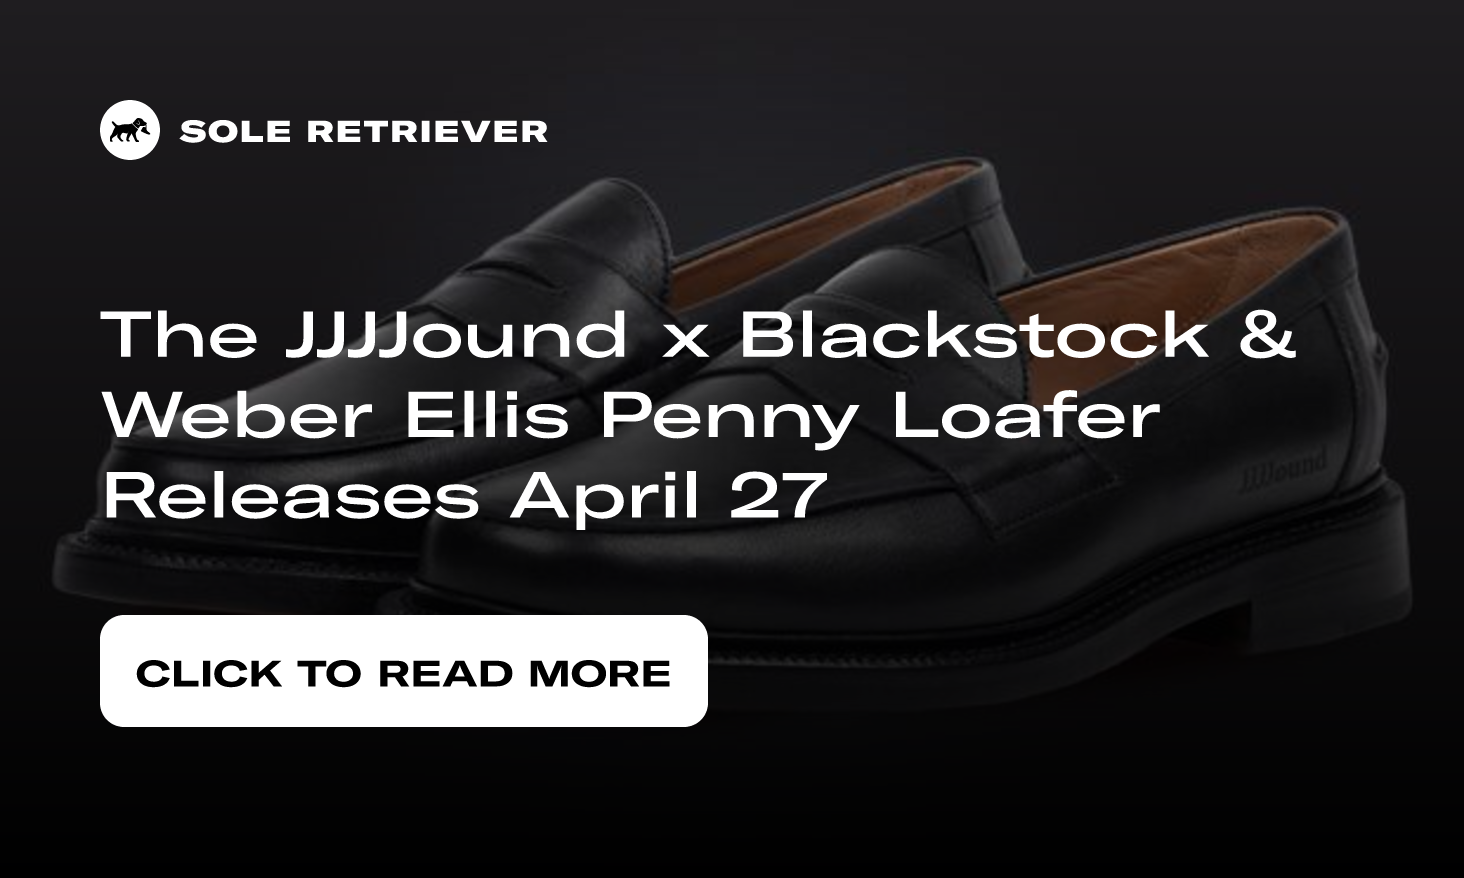 The JJJJound x Blackstock u0026 Weber Ellis Penny Loafer Releases April 27